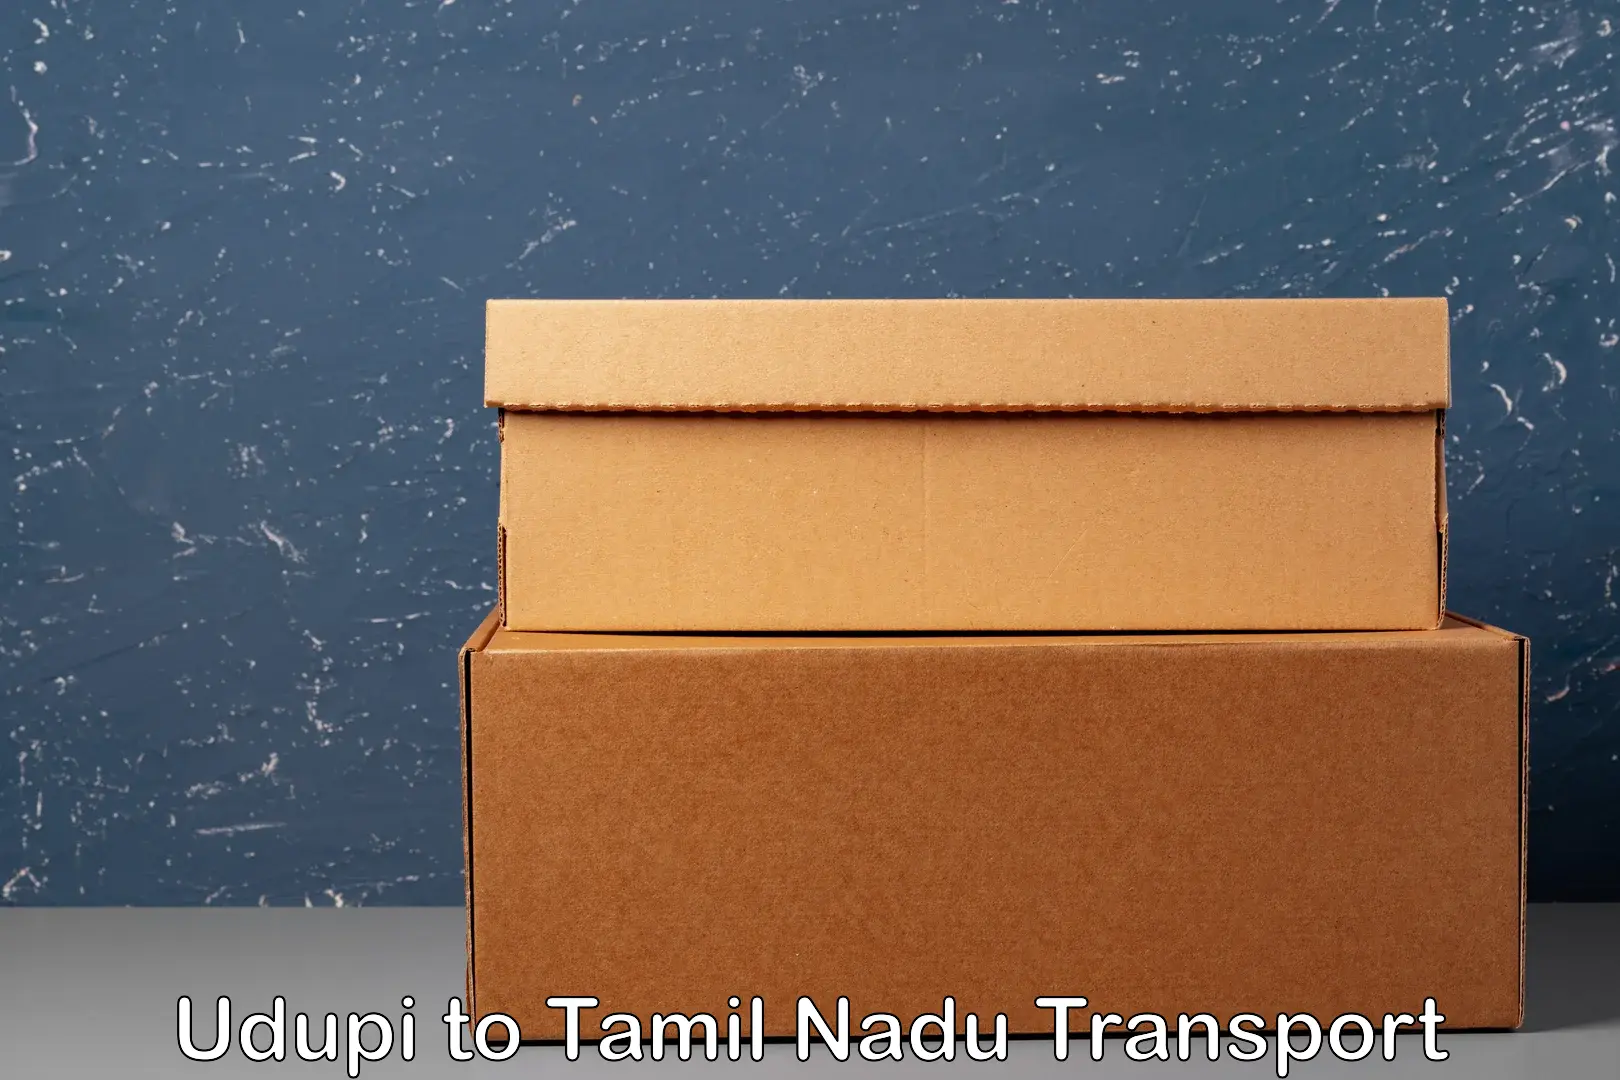 Nationwide transport services Udupi to Tamil Nadu